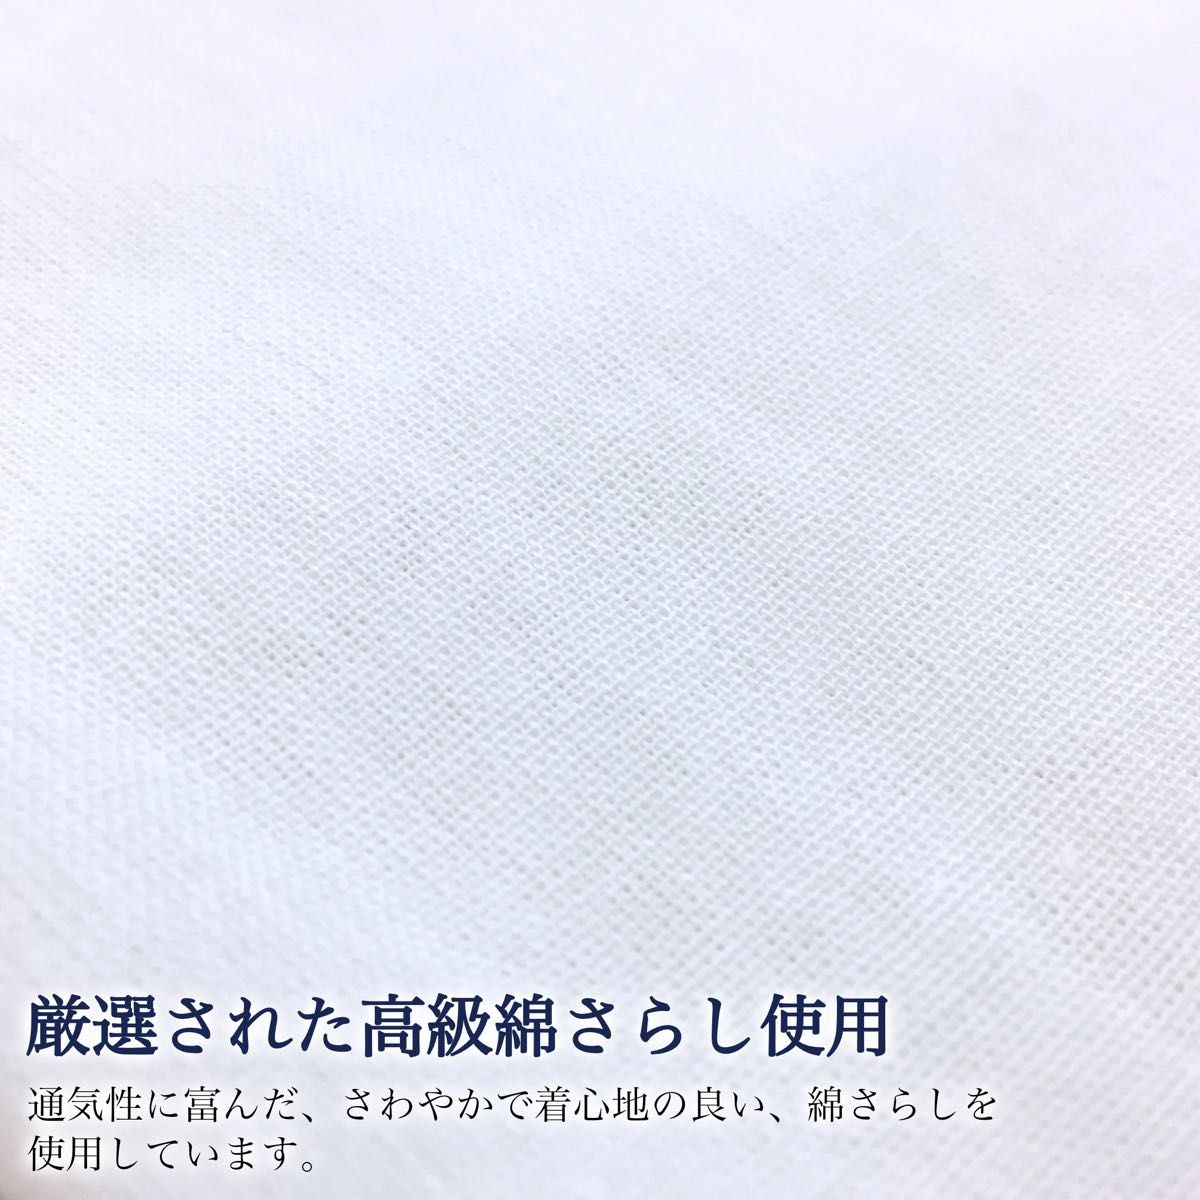 【新品】夏サラシ半襦袢 LL 絽半衿付き うそつき襦袢 着物下着 日本製 kimonolove